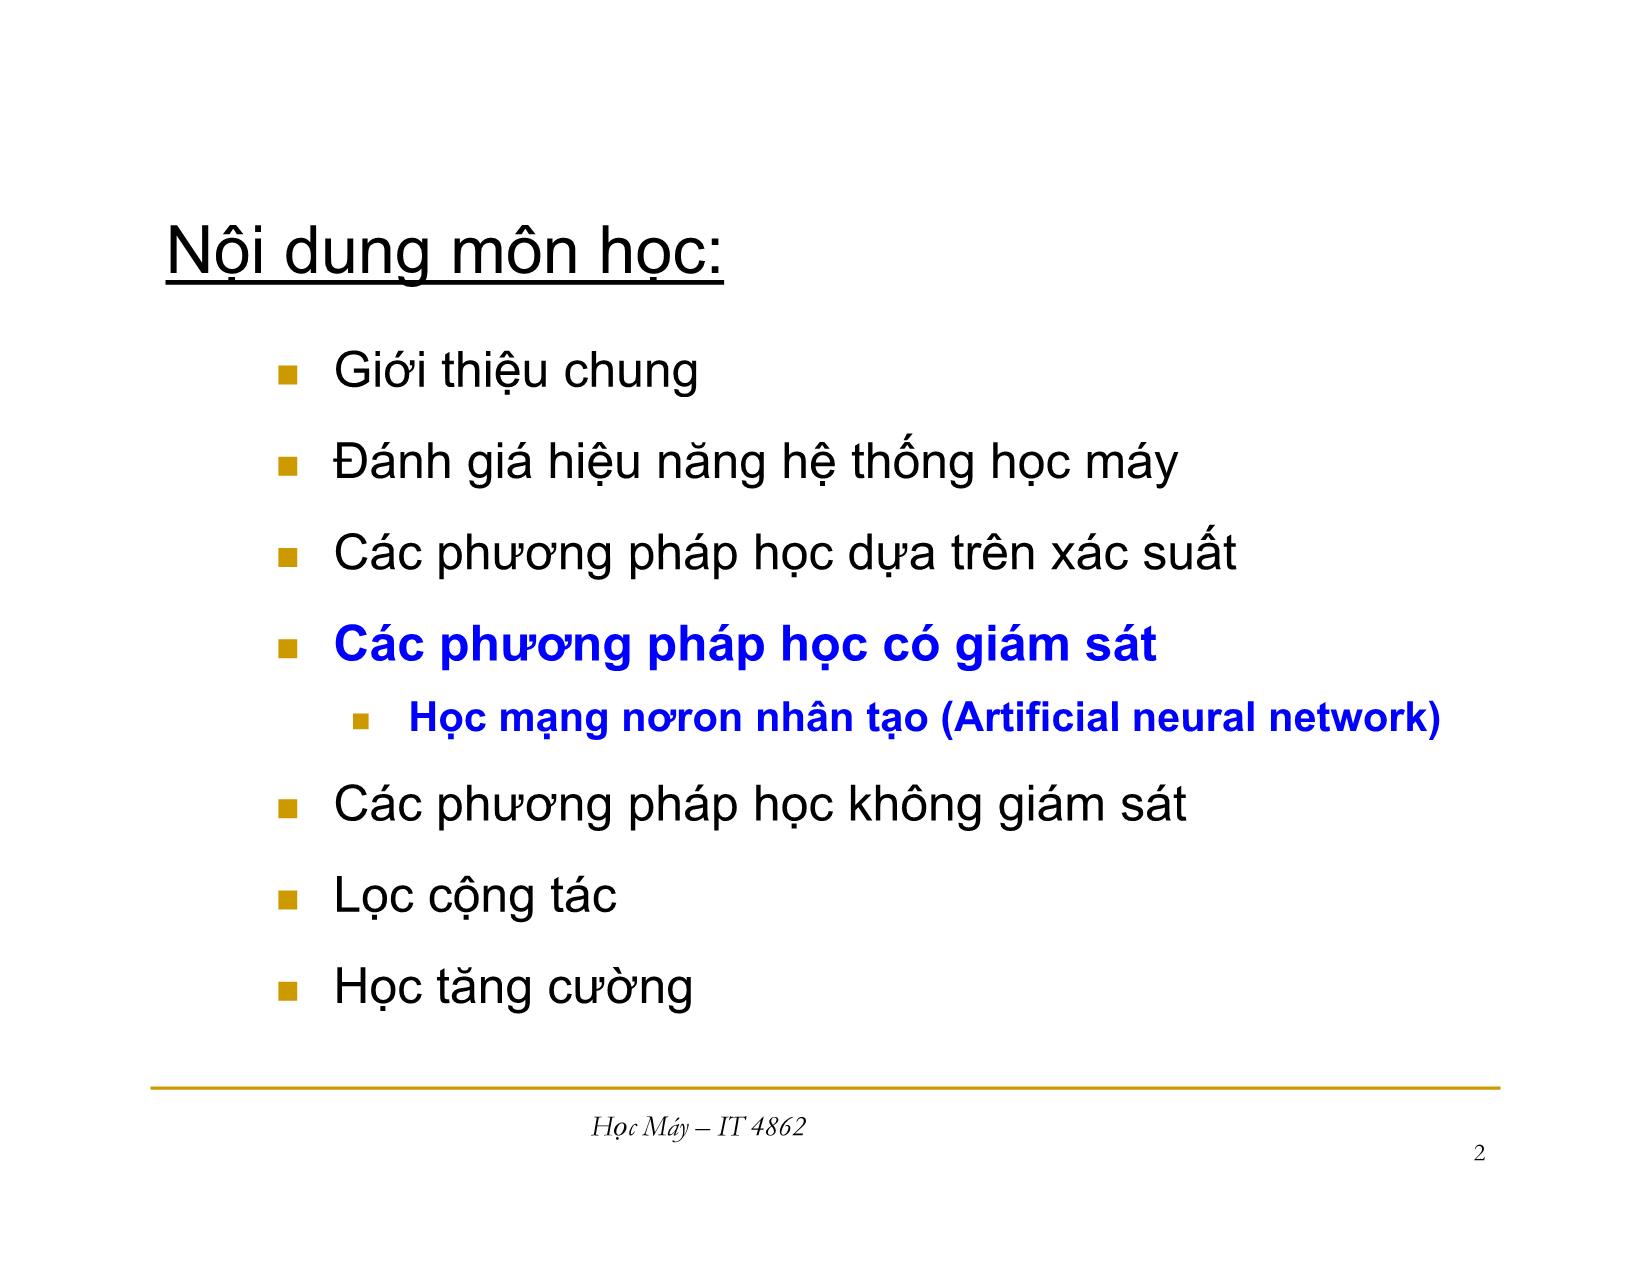 Bài giảng Học máy - Bài 8: Học mạng nơron nhân tạo - Nguyễn Nhật Quang trang 2